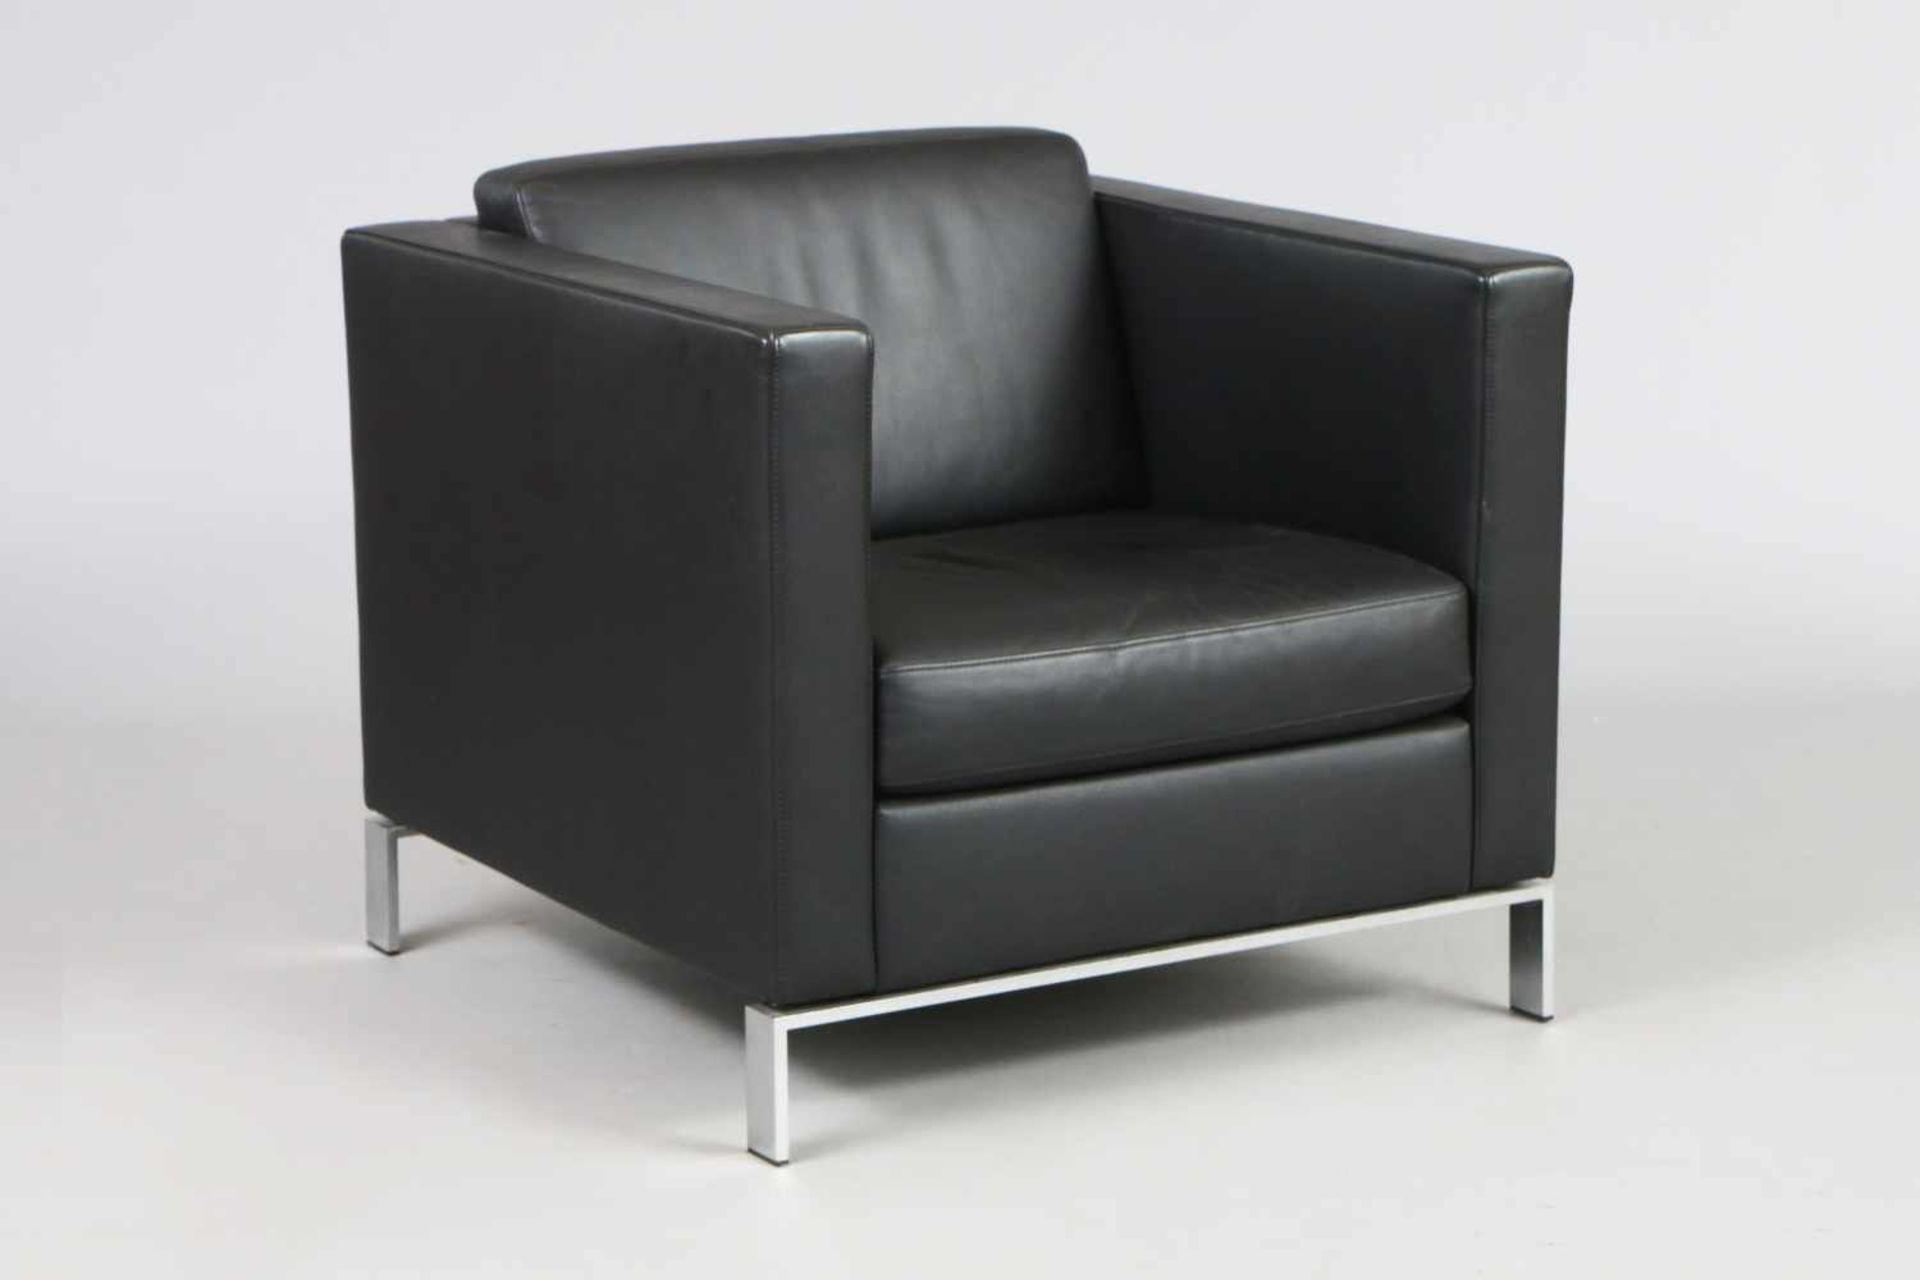 WALTER KNOLL Ledersessel ¨Foster¨ (Club Chair)schwarz beledert, eckige Form mit losen Sitz- und